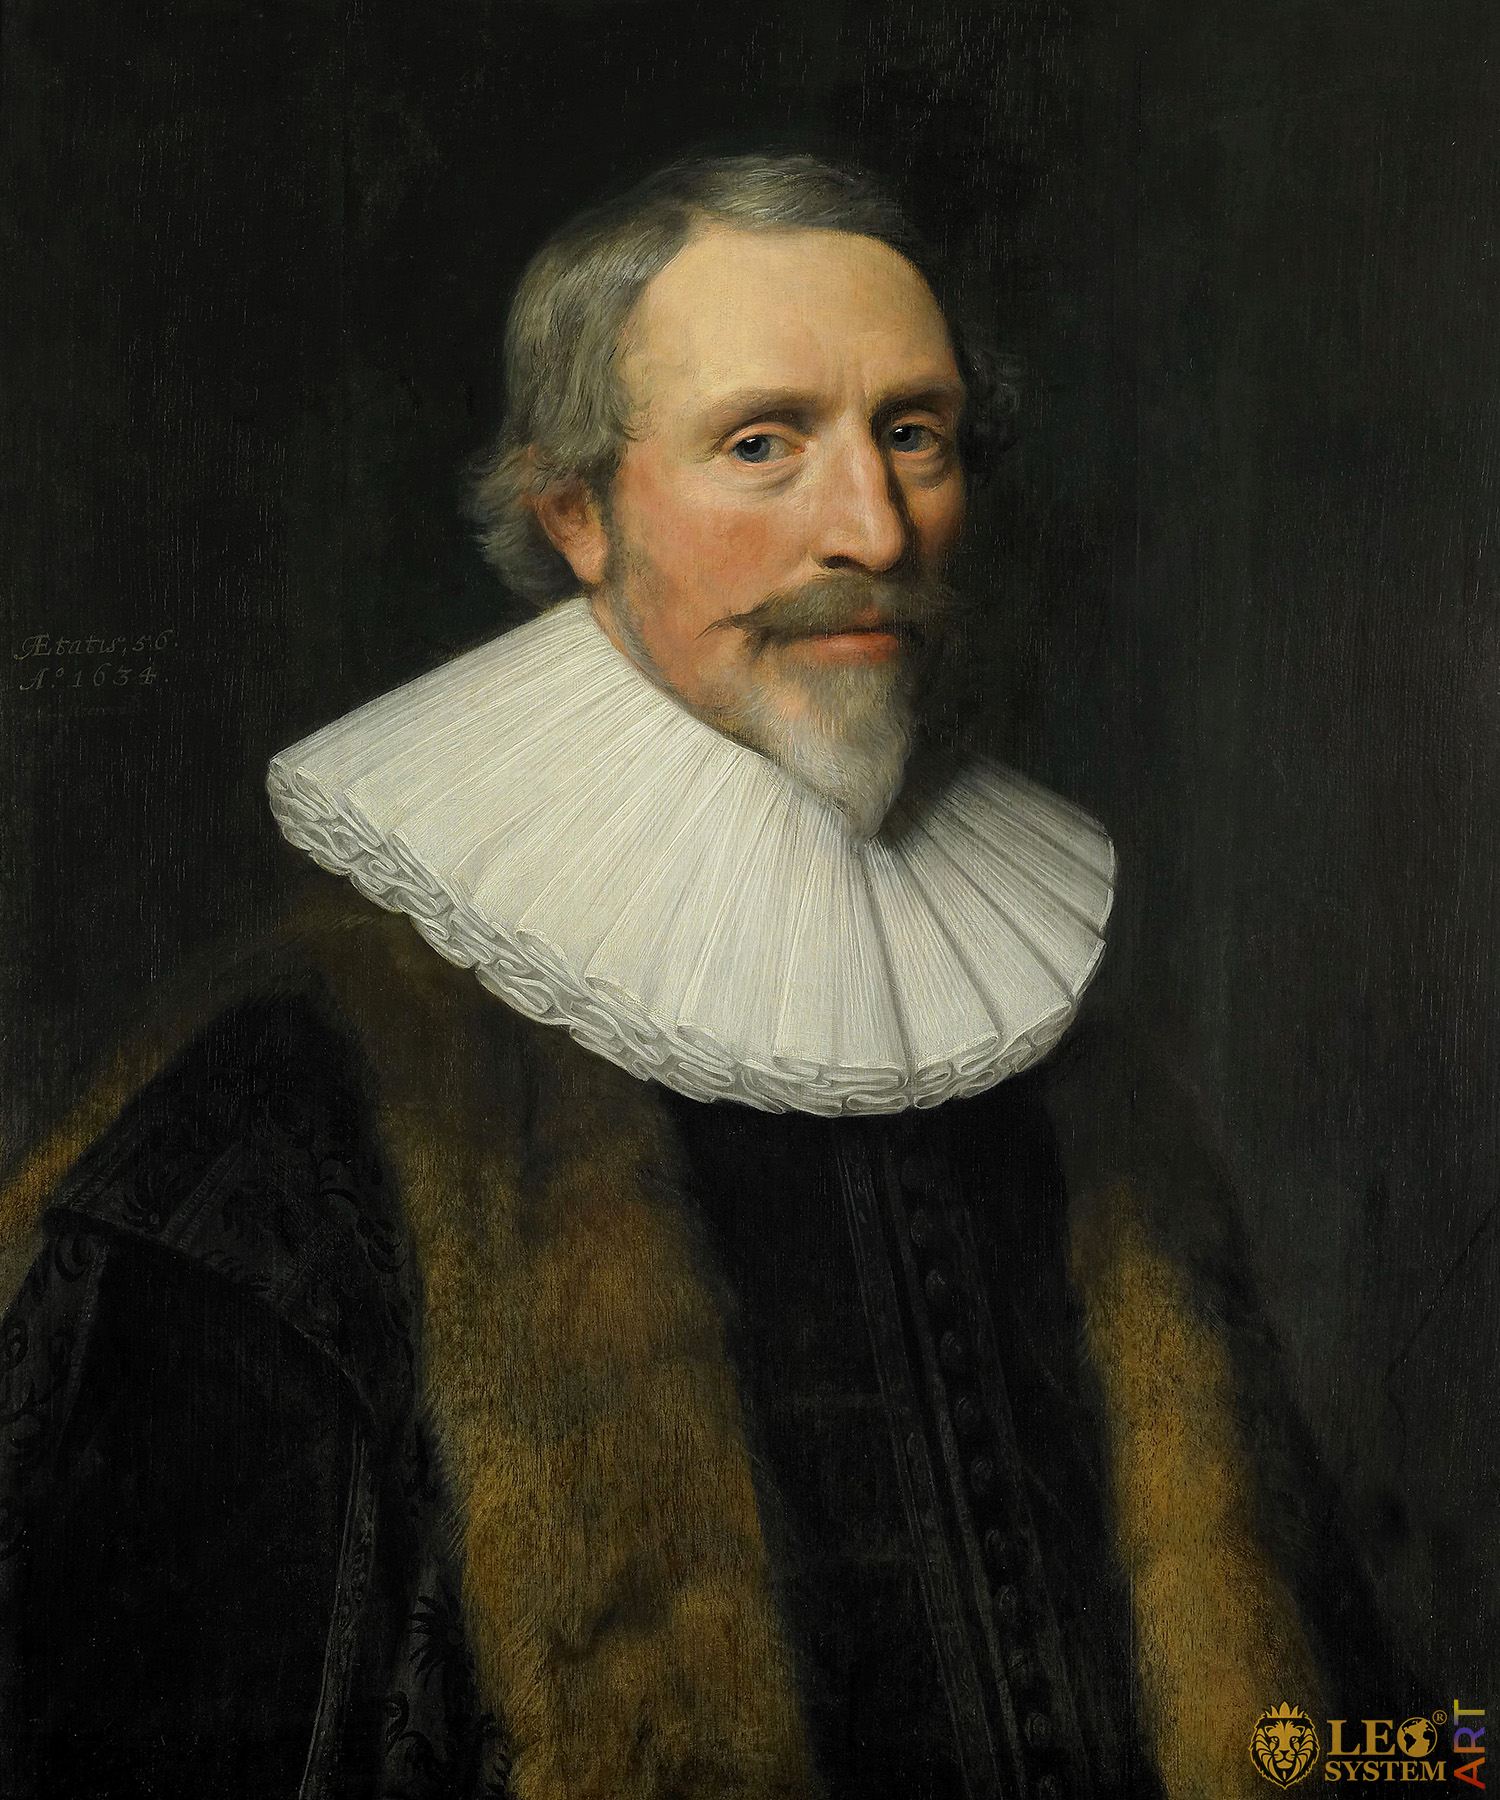 Portrait of Jacob Cats, Painter: Michiel Jansz van Mierevelt, 1639, Dutch Painting